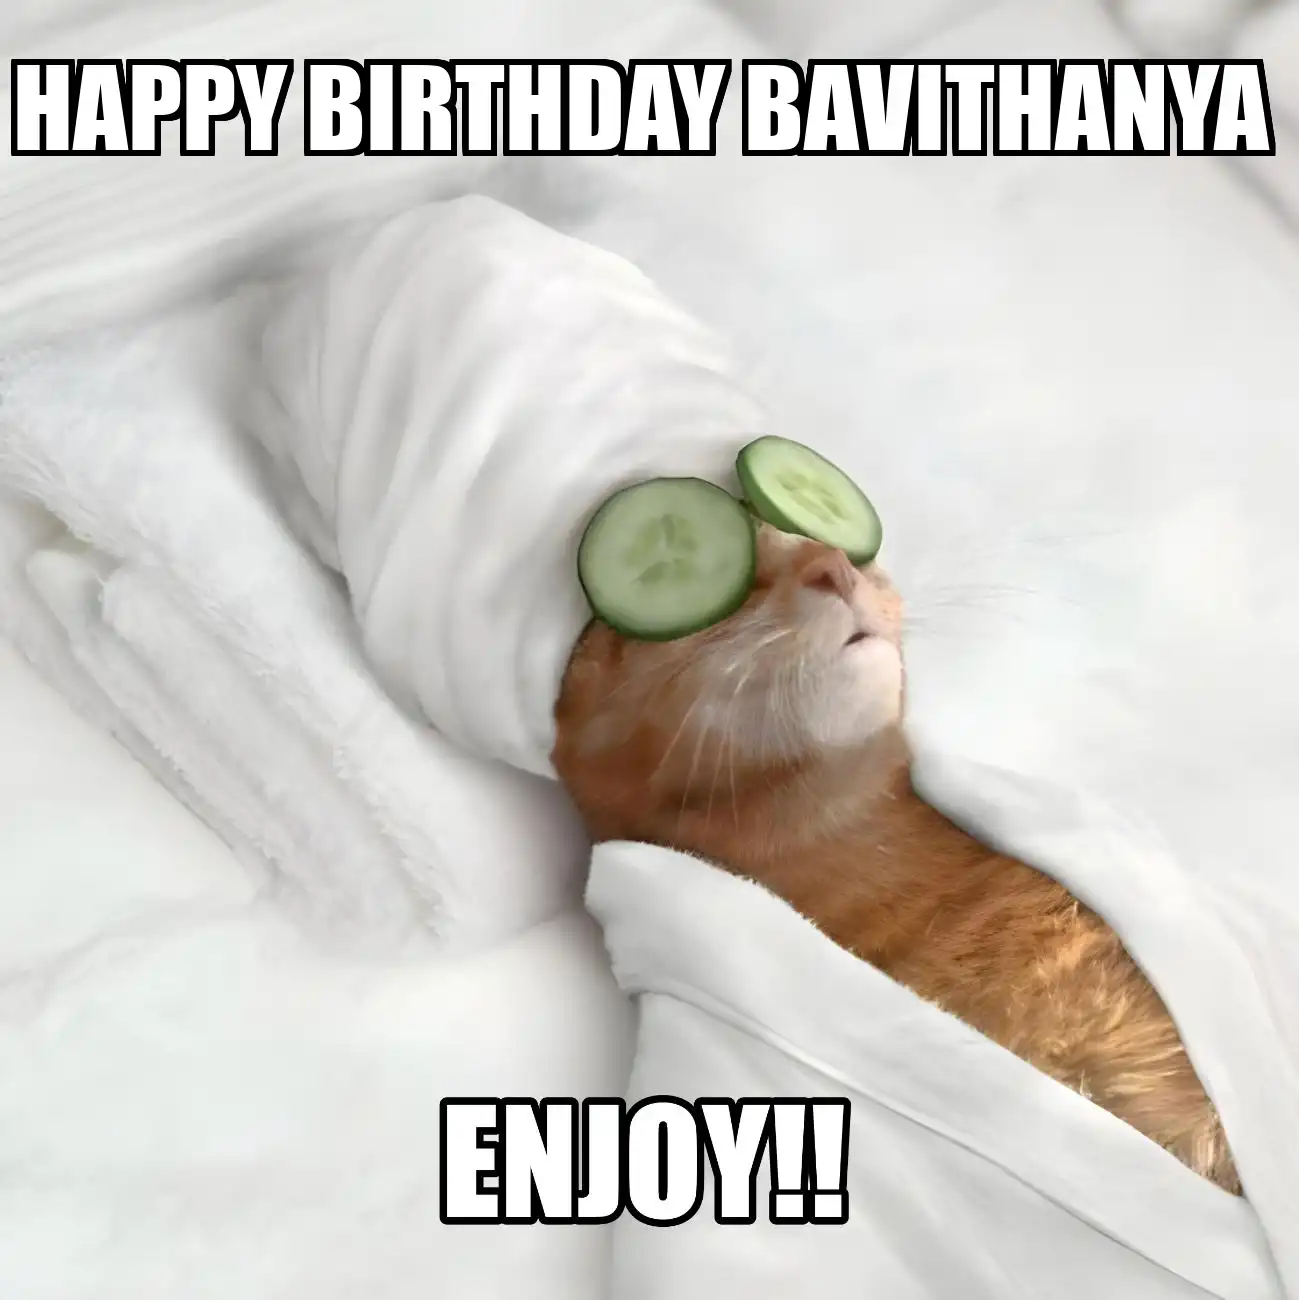 Happy Birthday Bavithanya Enjoy Cat Meme